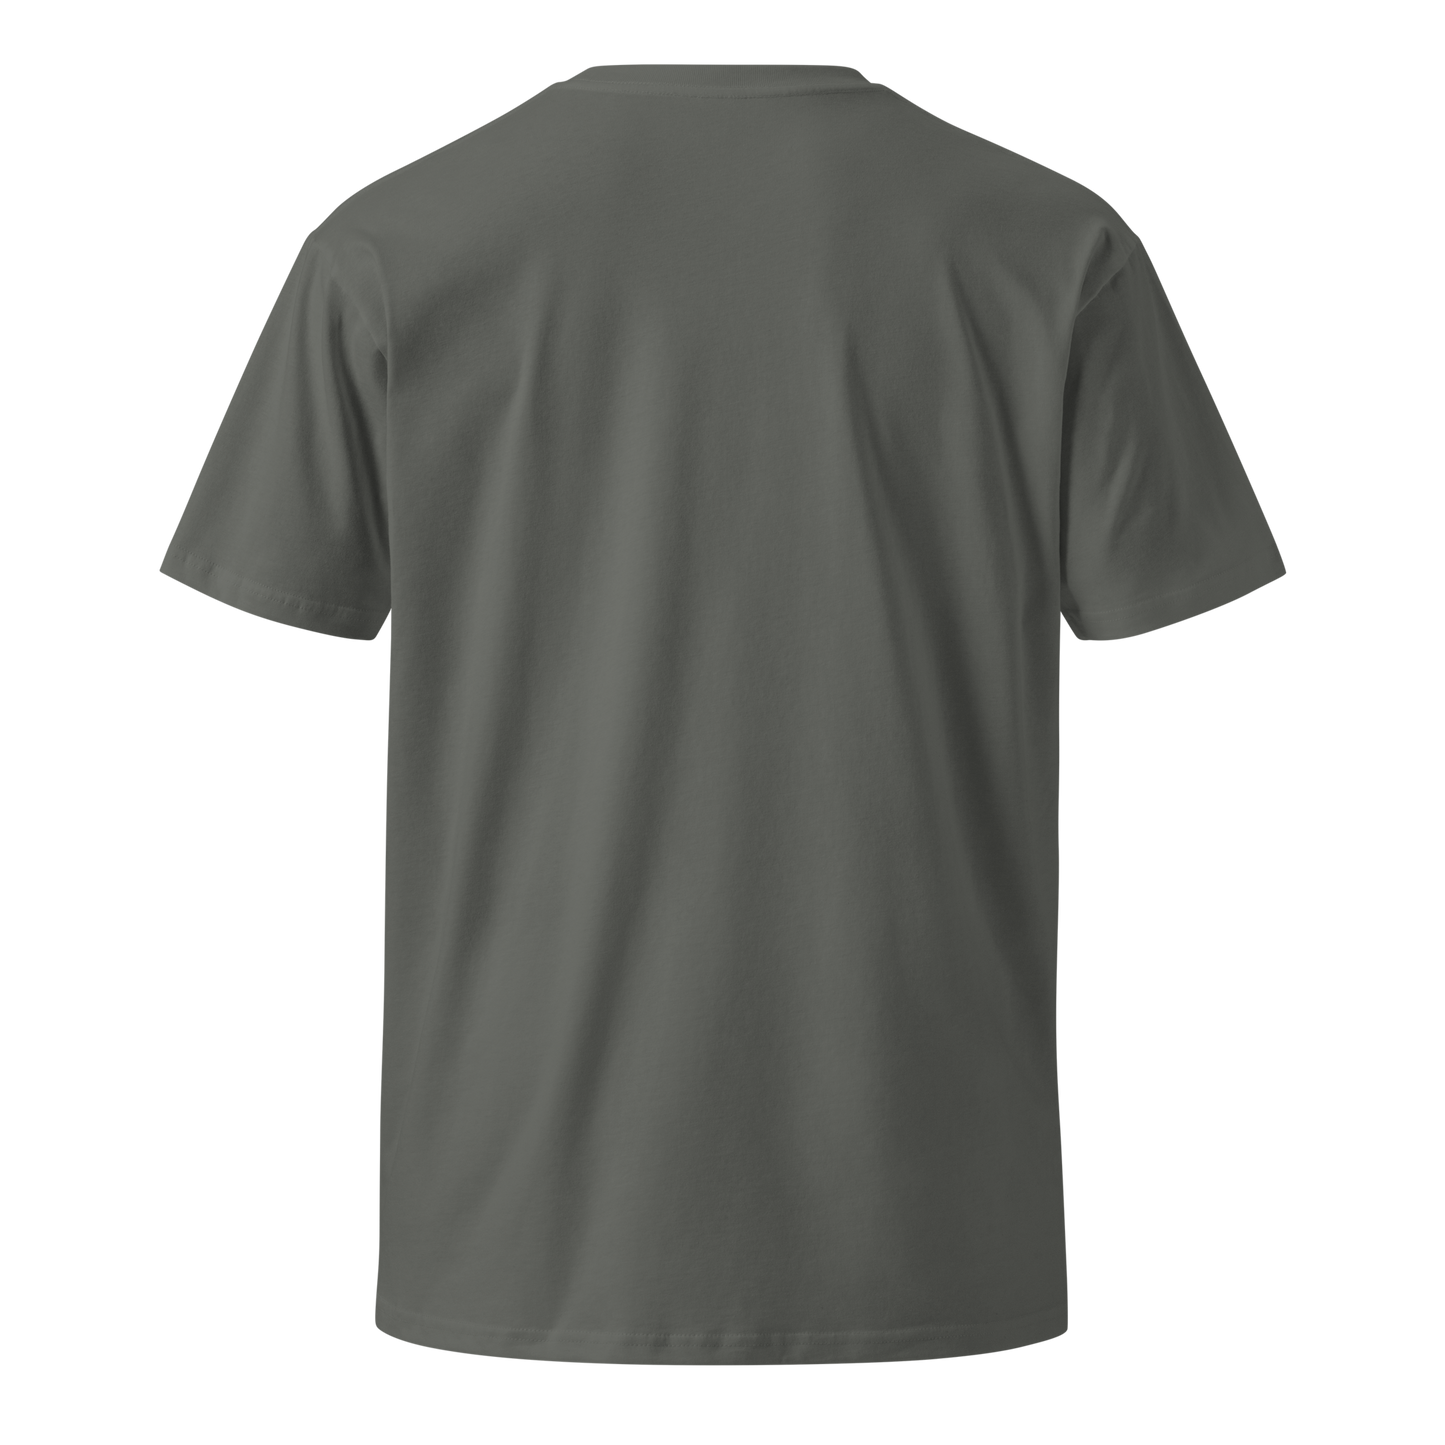 Unisex premium t-shirt "Bird"